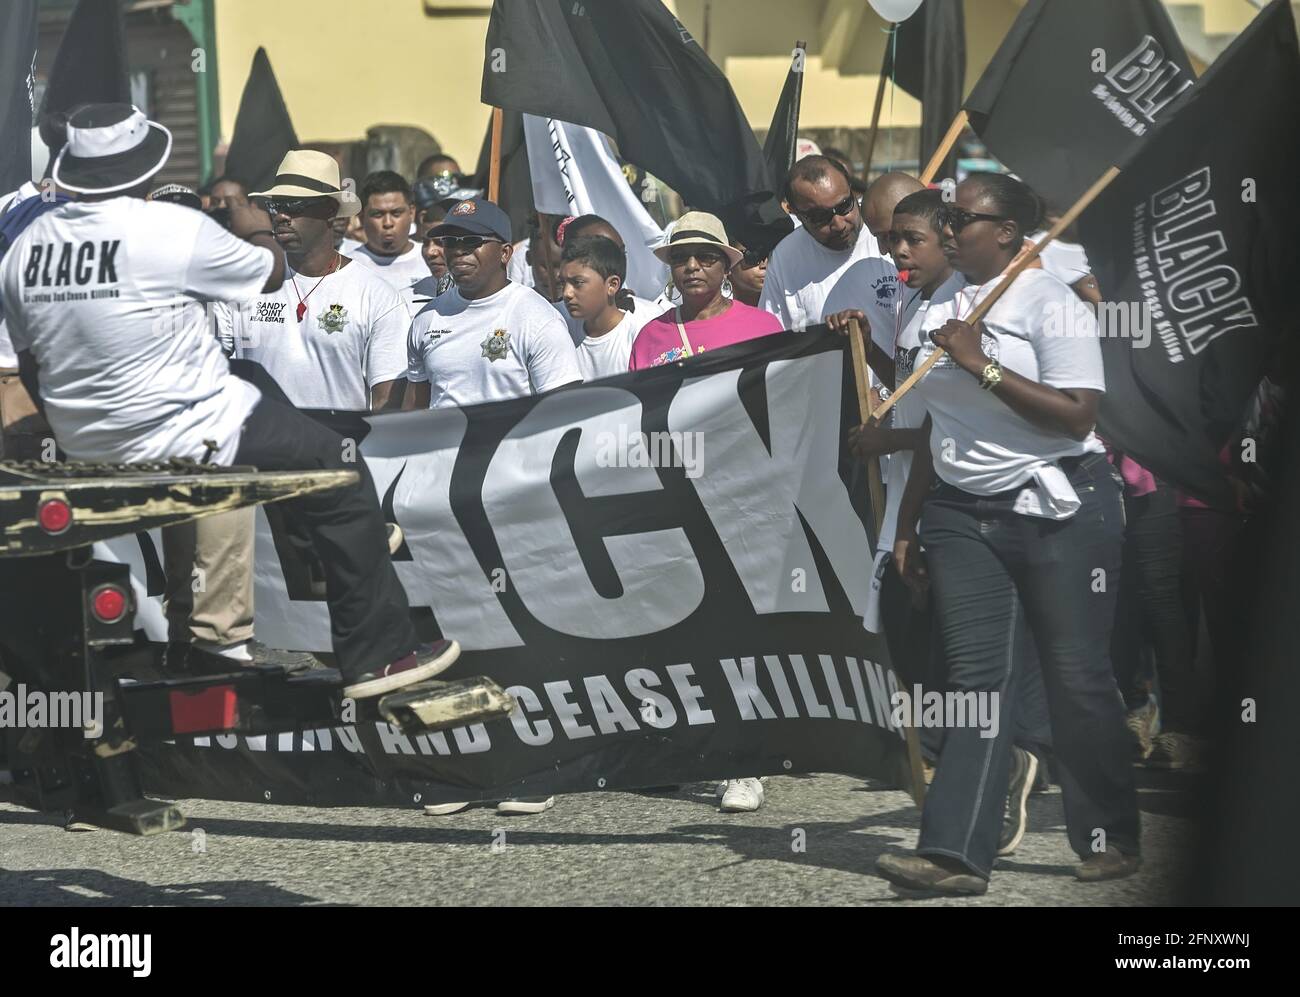 Belize City/Belize - 17 mars 2016 : manifestation contre la criminalité et la violence. Être aimant et cesser de tuer: NOIR. Personnes avec des signes et des drapeaux. Banque D'Images